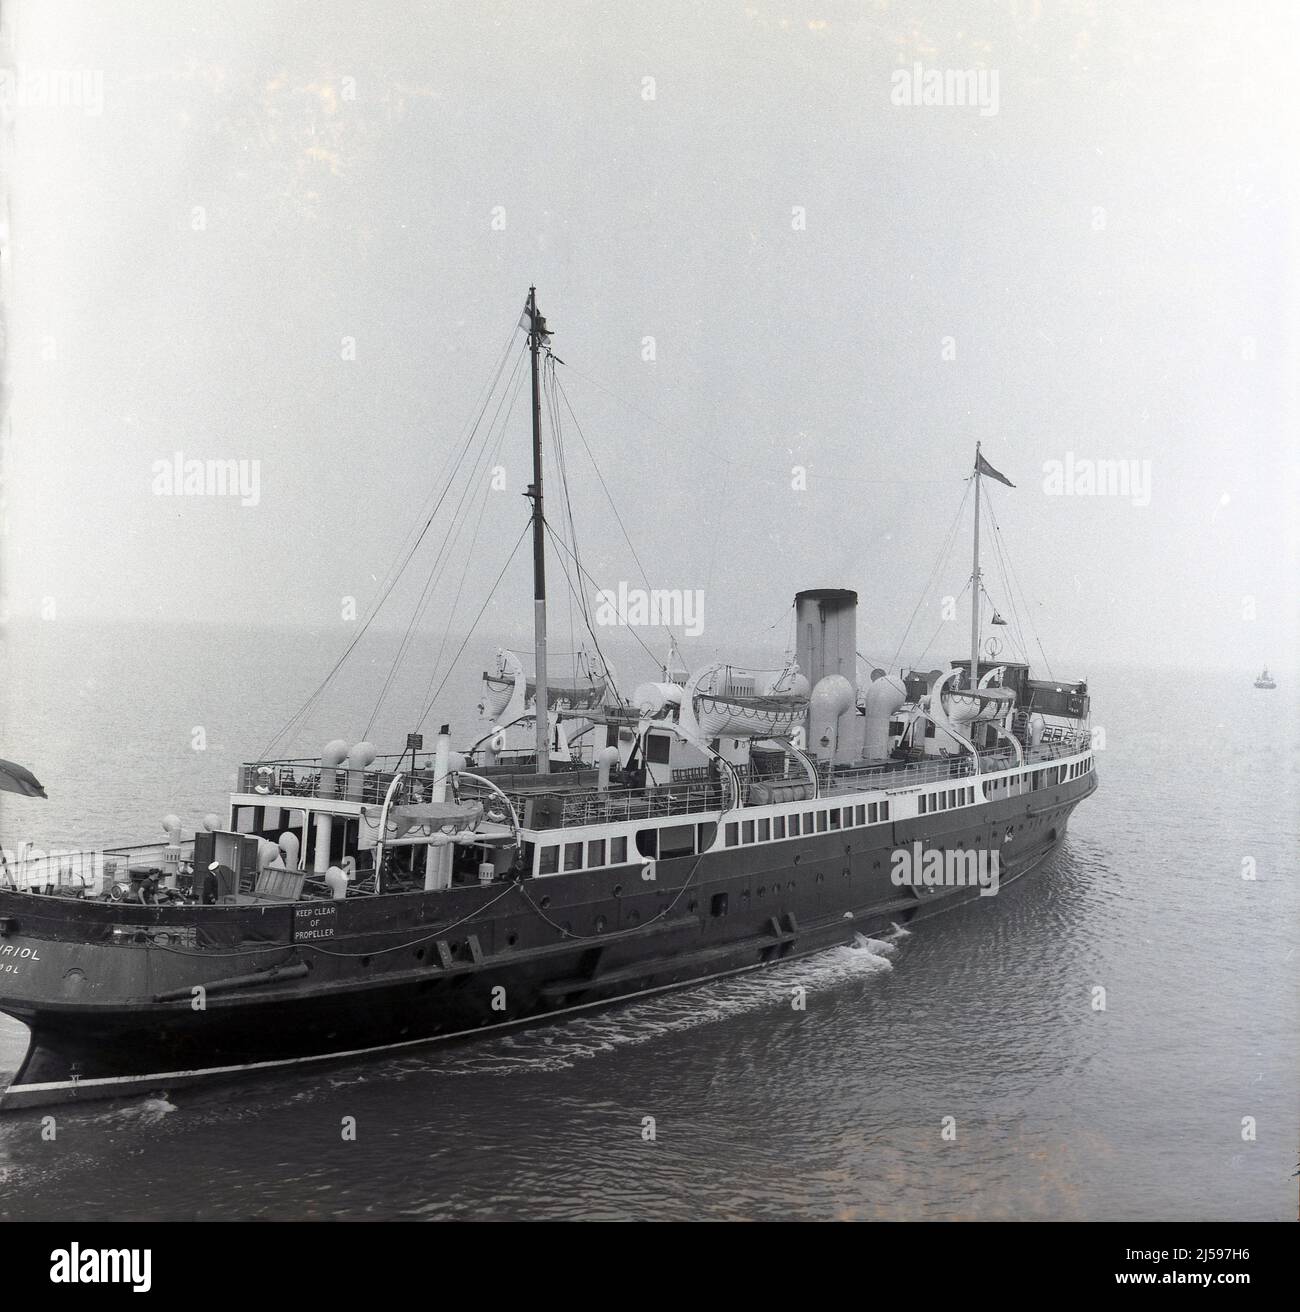 1959, storica, la nave a vapore passeggeri 'St Seiriol', della società di trasporto di vapore Liverpool e Galles del Nord che lascia il porto, Rhyl, Galles, Regno Unito. Cartello sul lato della nave, dice: "TENERE LONTANO DALL'ELICA". La nave entrò in servizio nel 1935 e operò fino al 1962. Foto Stock